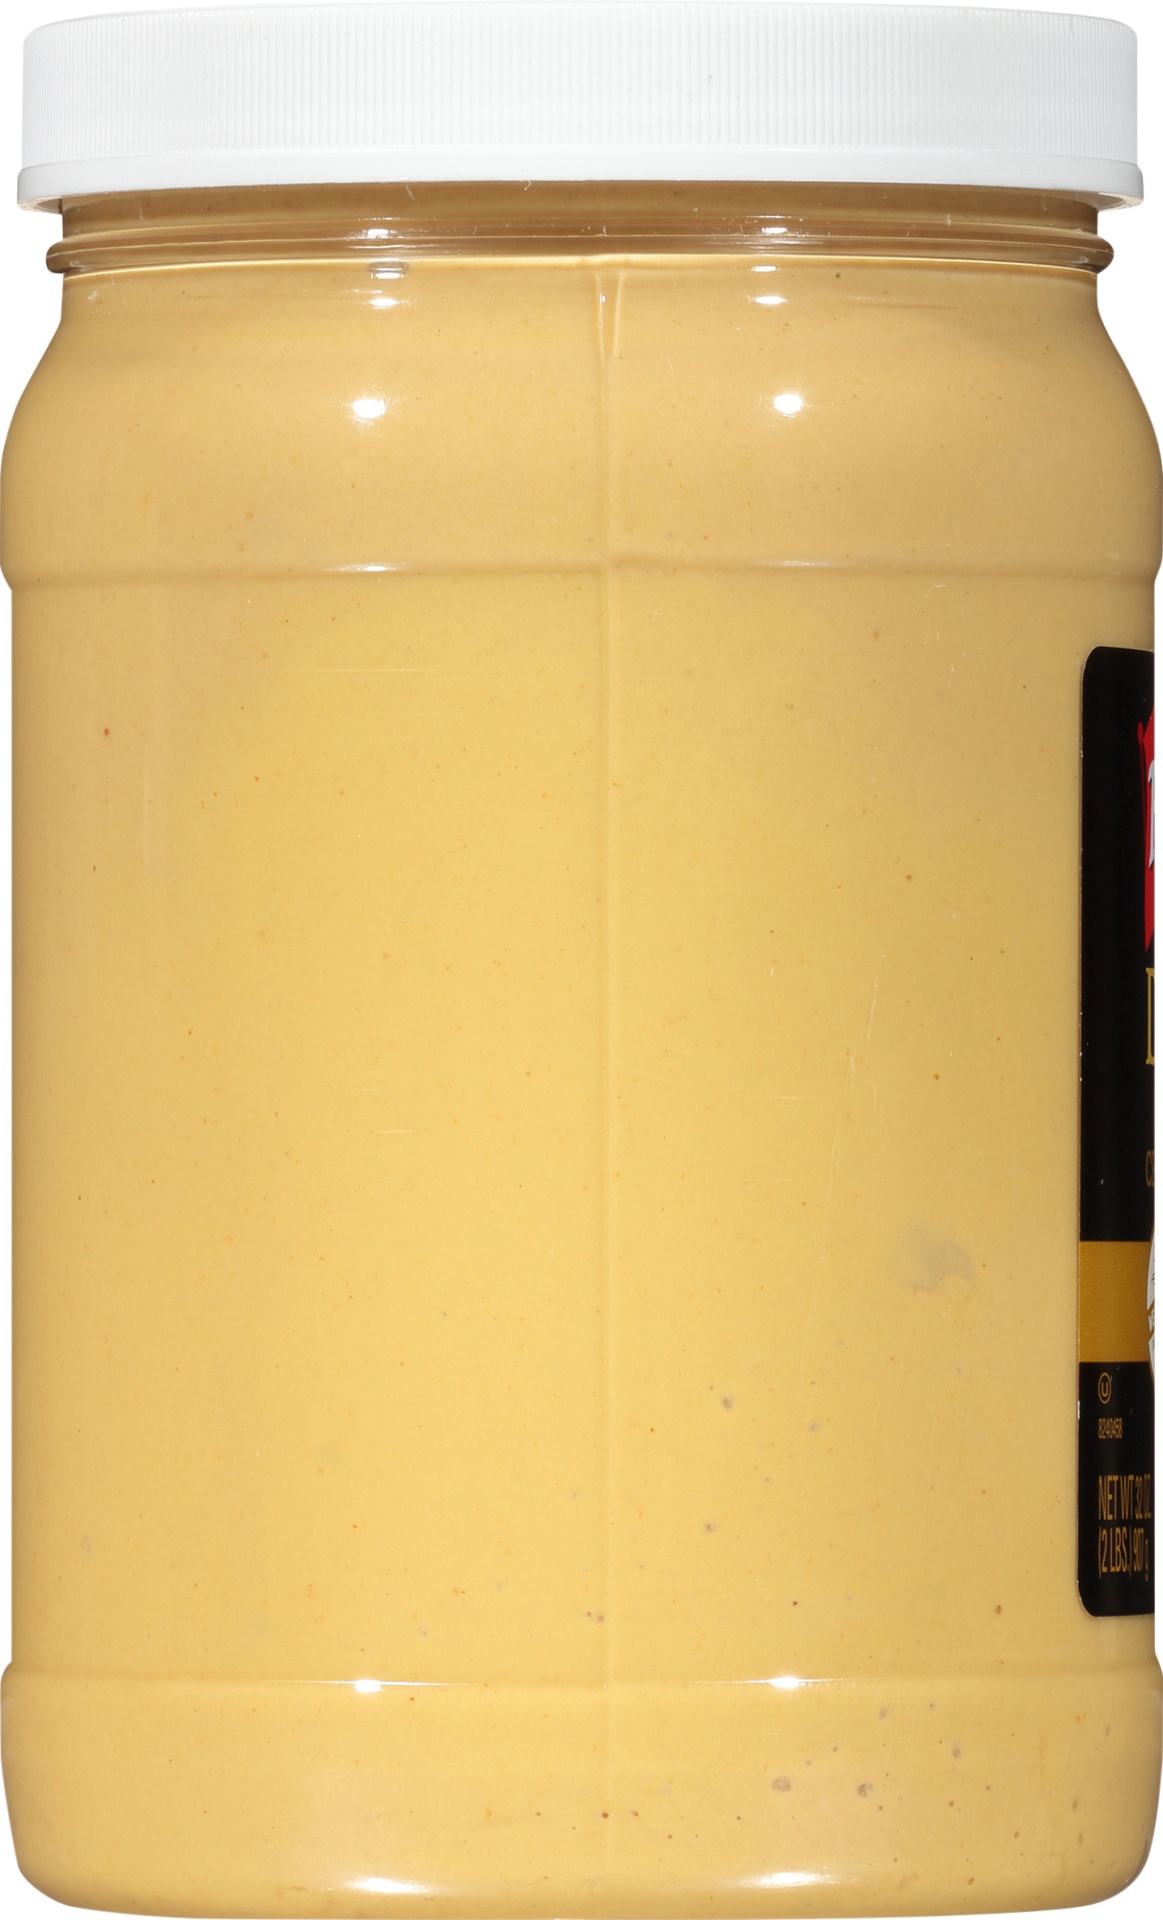 slide 5 of 6, French's Dijon Mustard, 32 oz